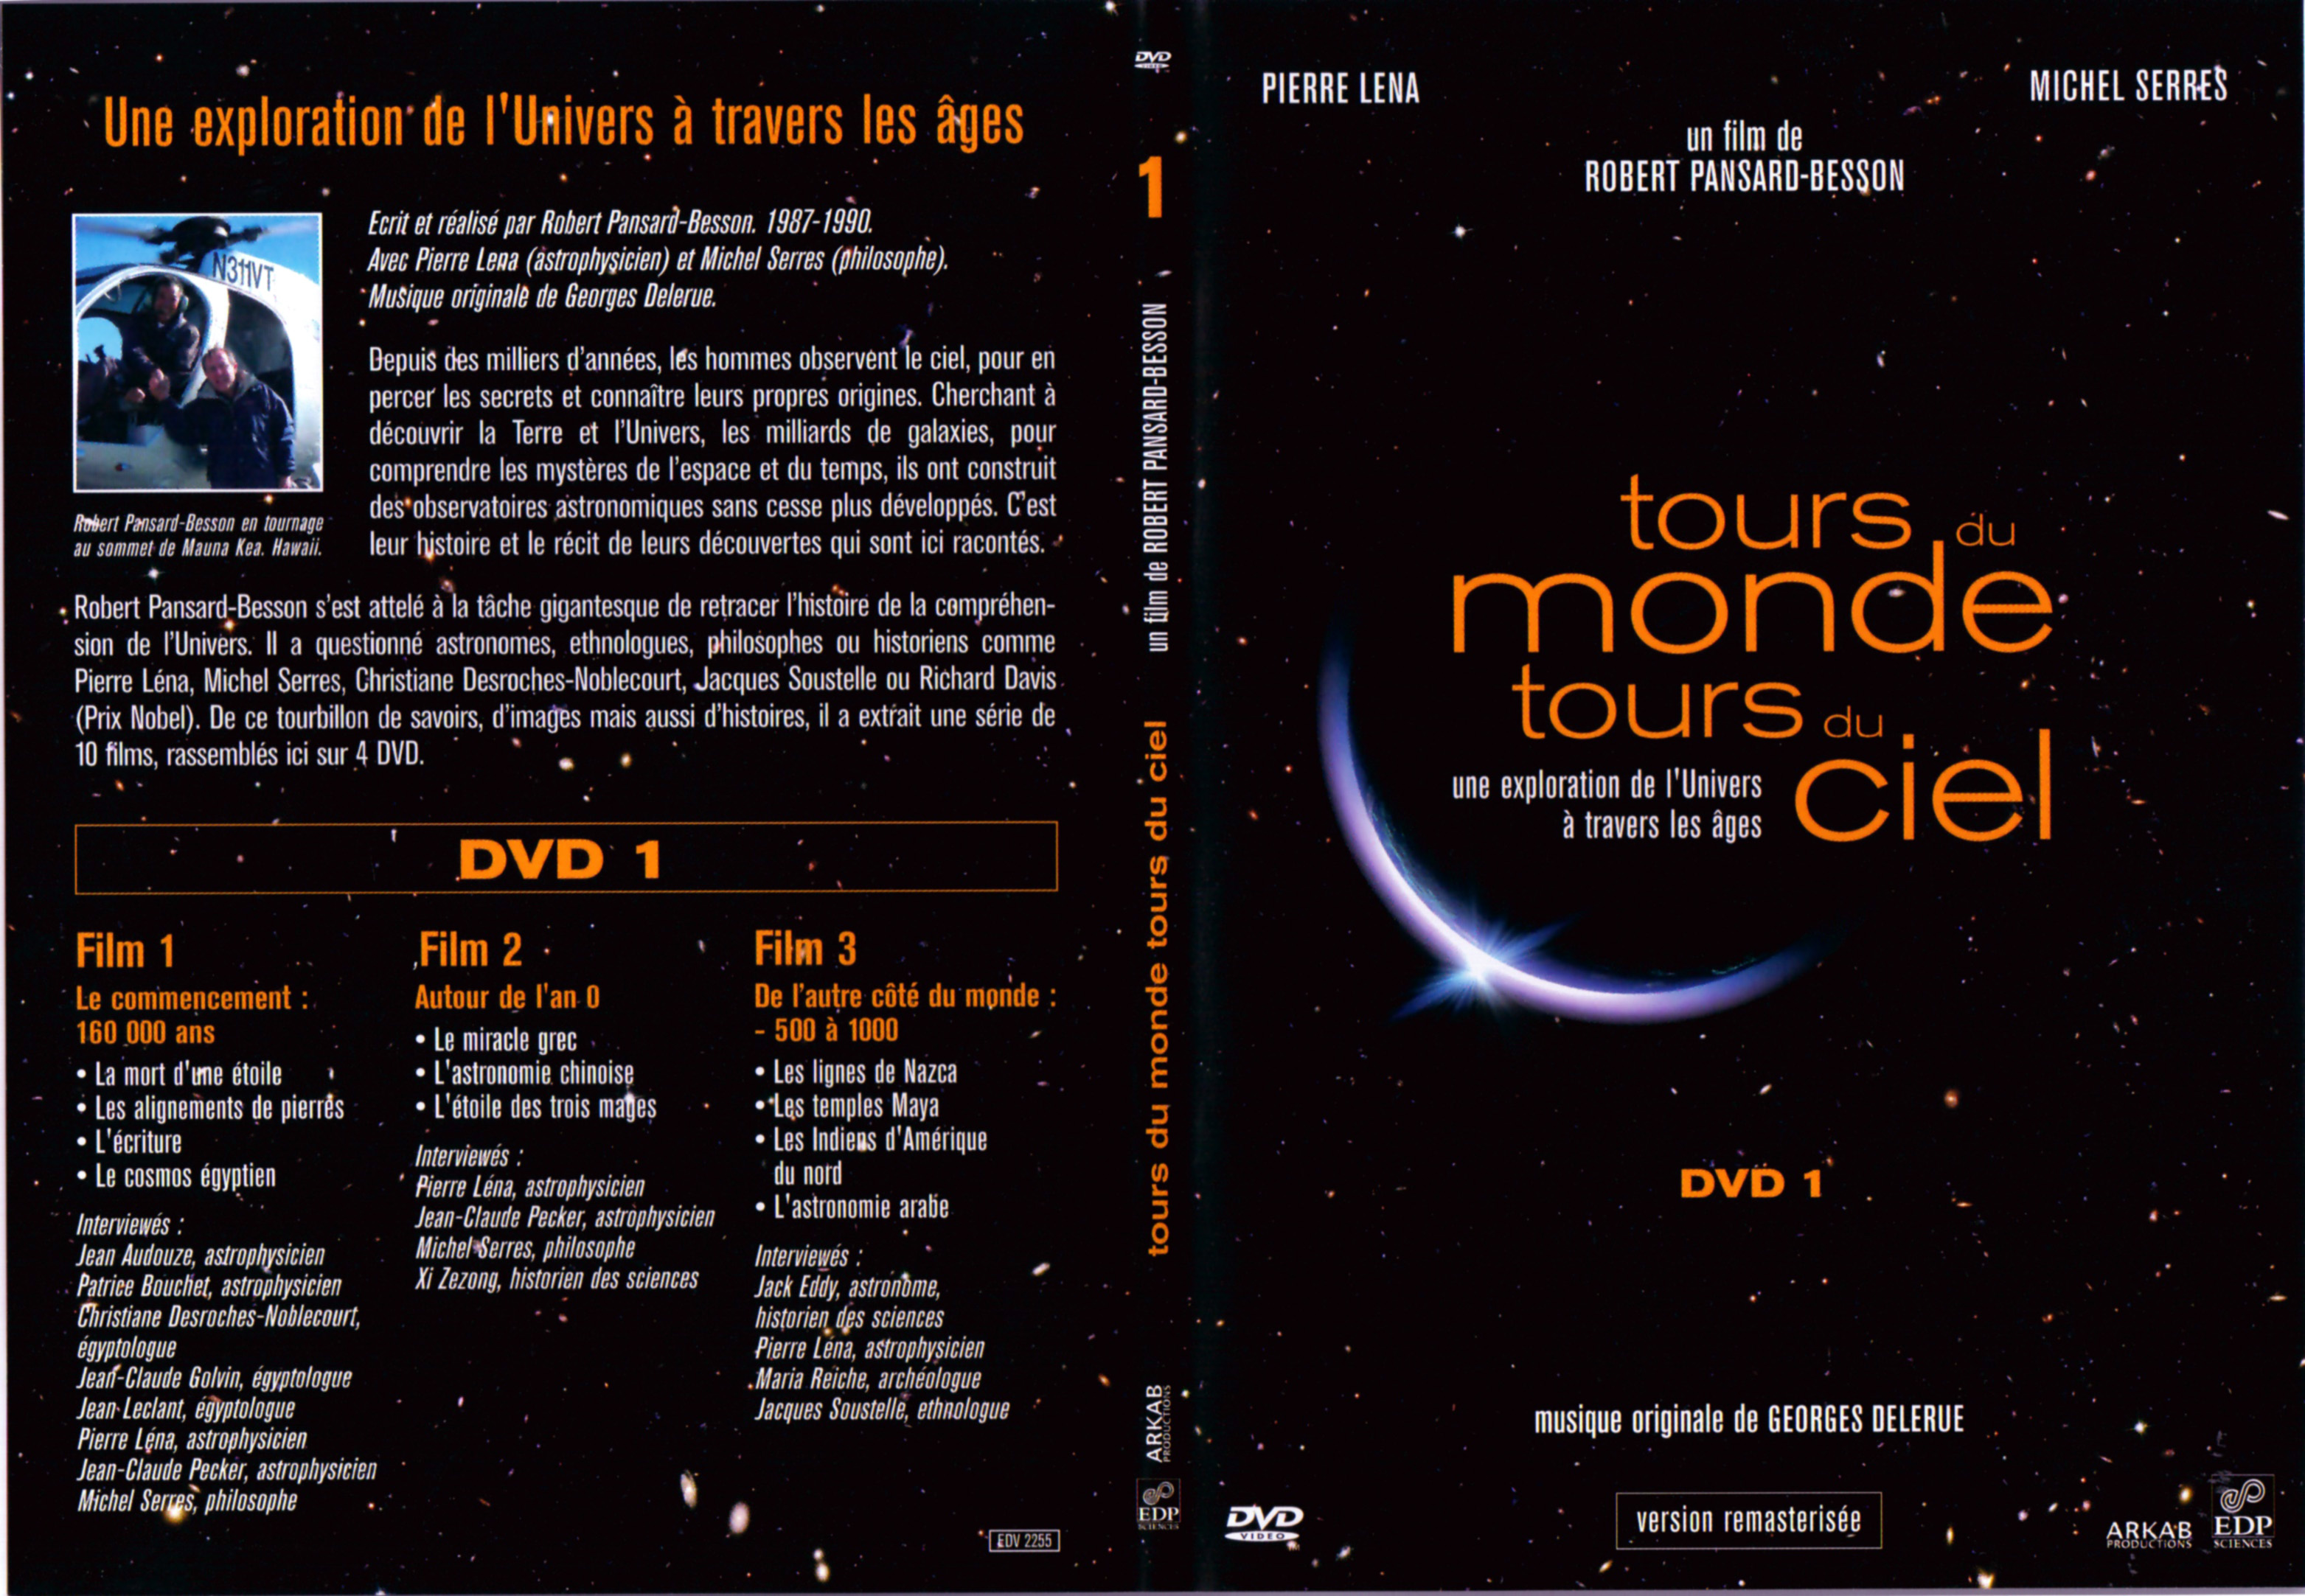 Jaquette DVD Tours du monde Tours du ciel DVD 1